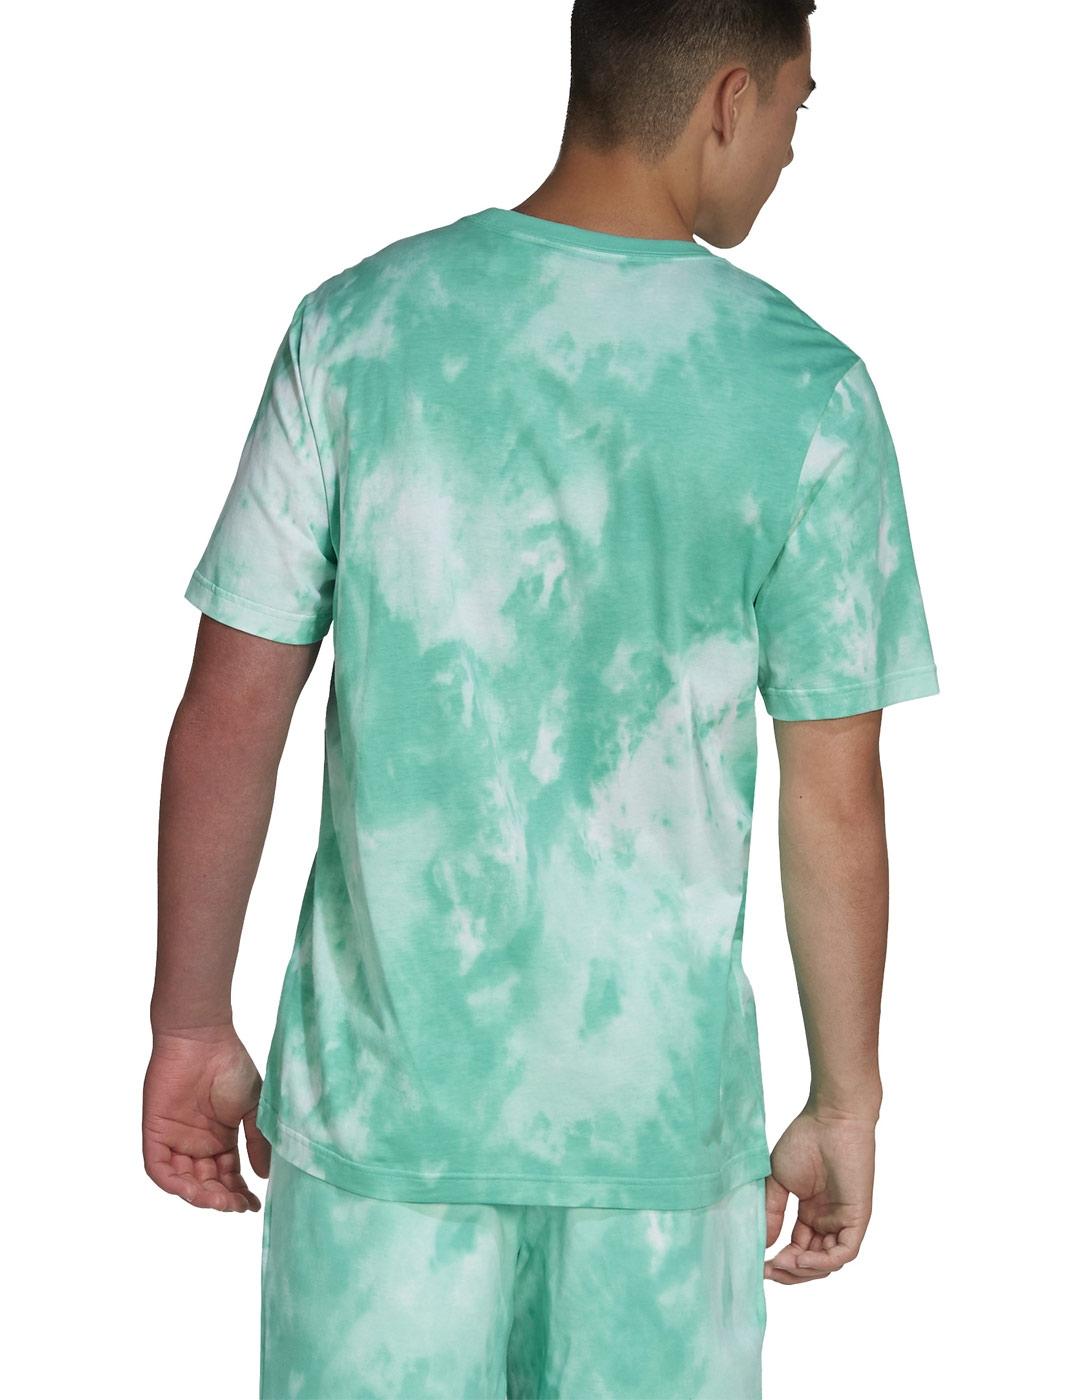 Camiseta Adidas Essential Verde